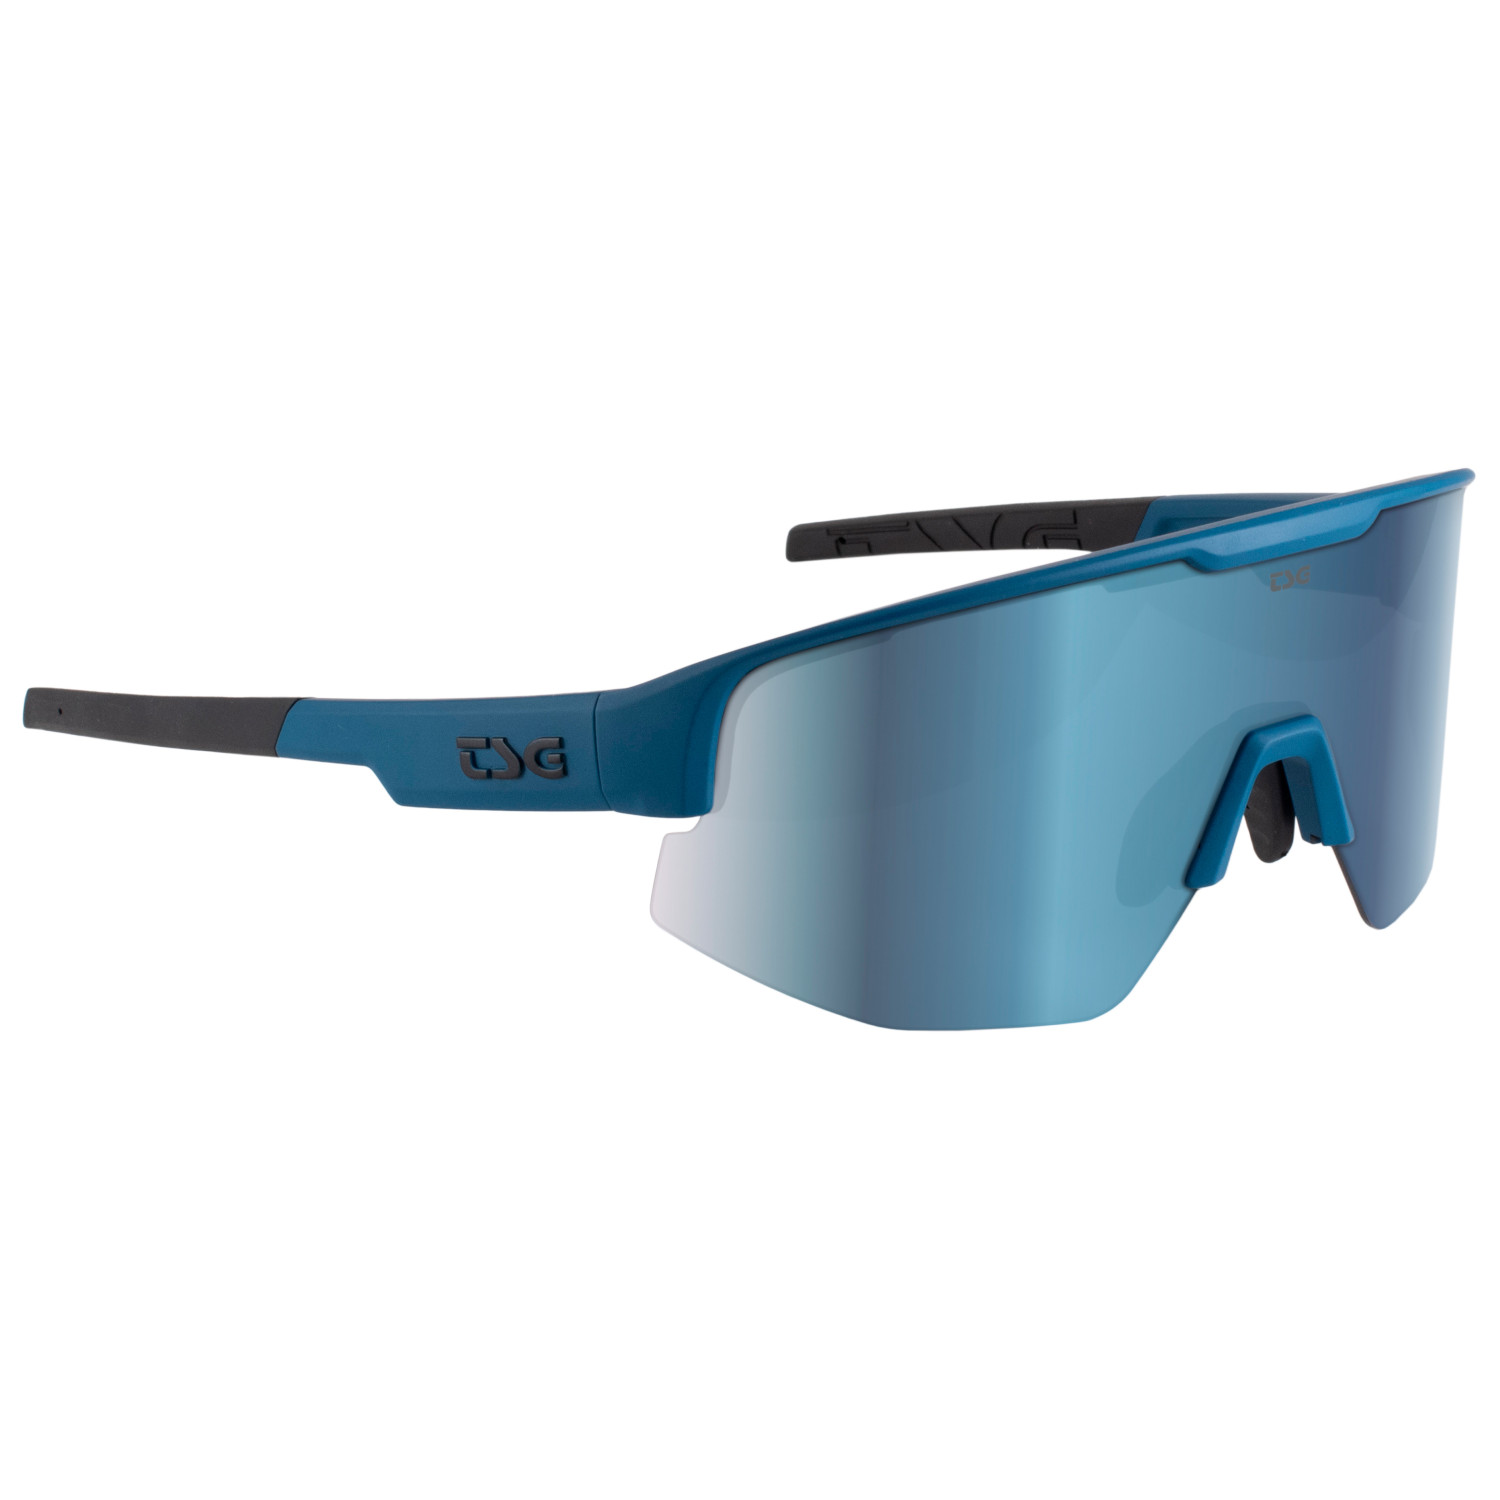 Велосипедные очки Tsg Loam Sunglasses, темно синий солнцезащитные очки svetodar116 очки велосипедные спорт очки темно синий черный